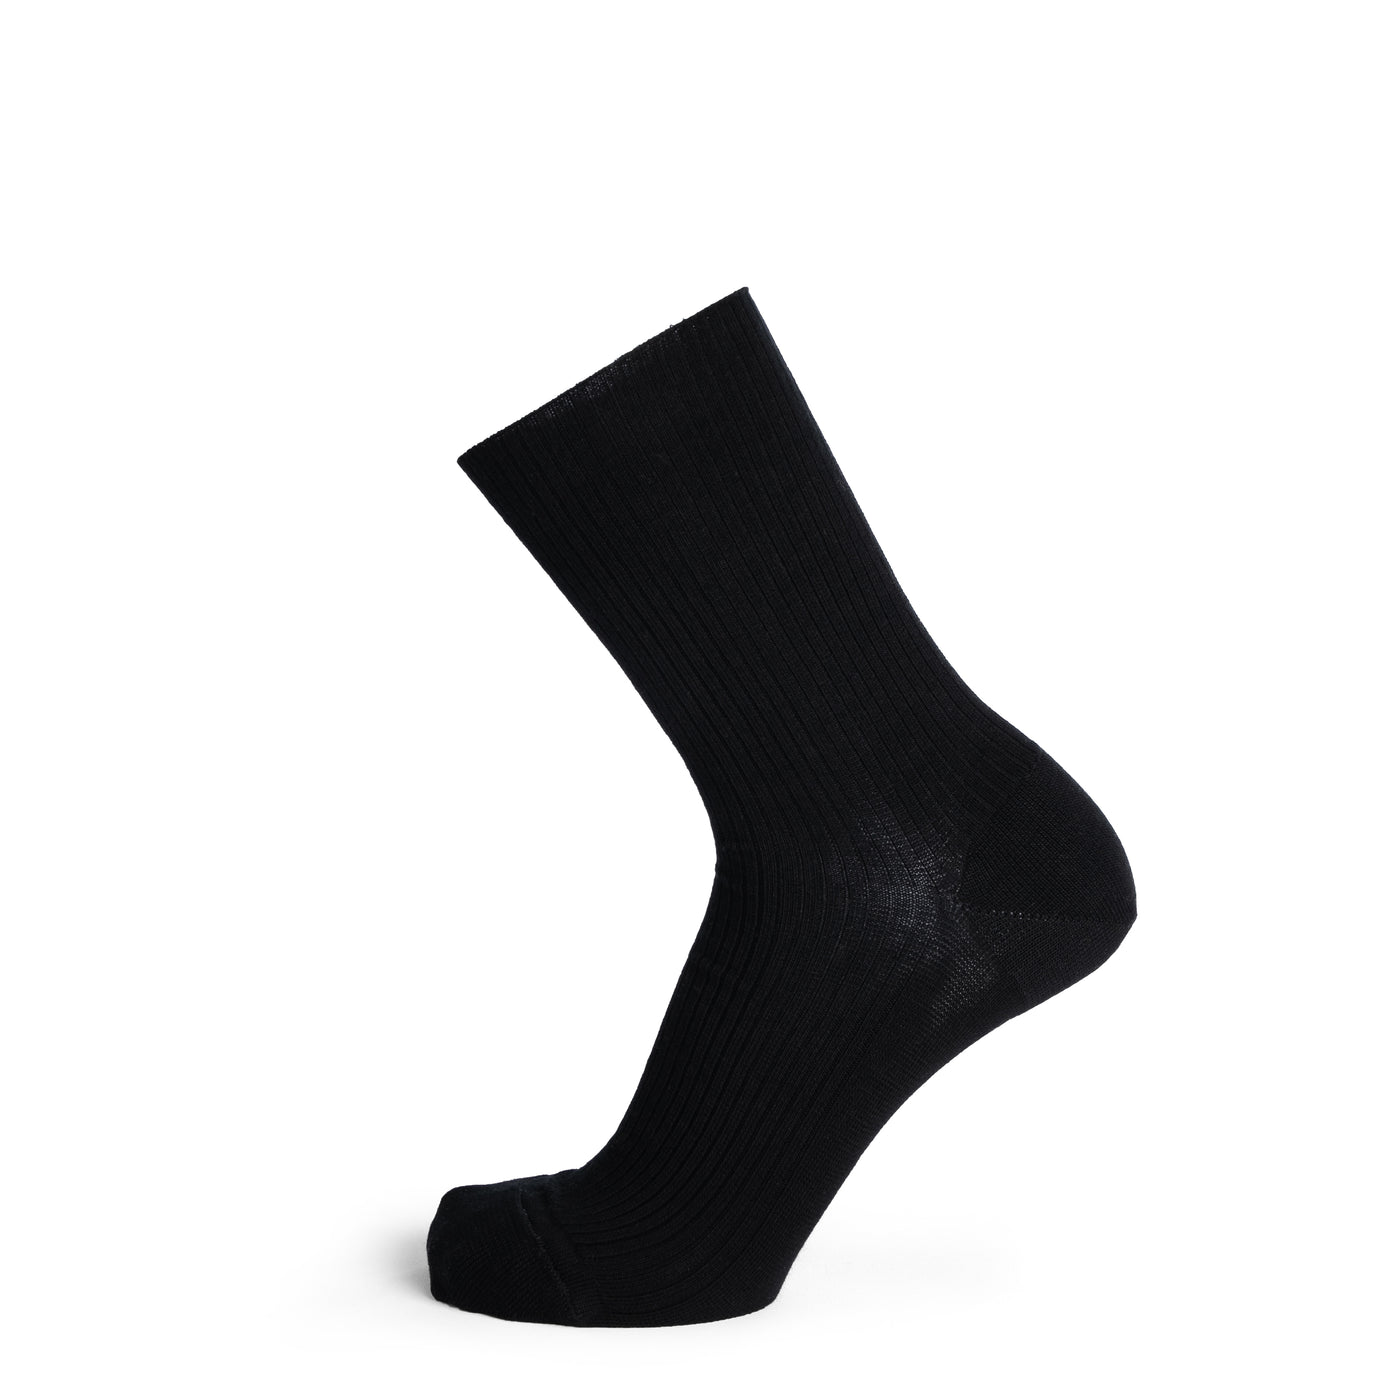 Non-compressive black socks